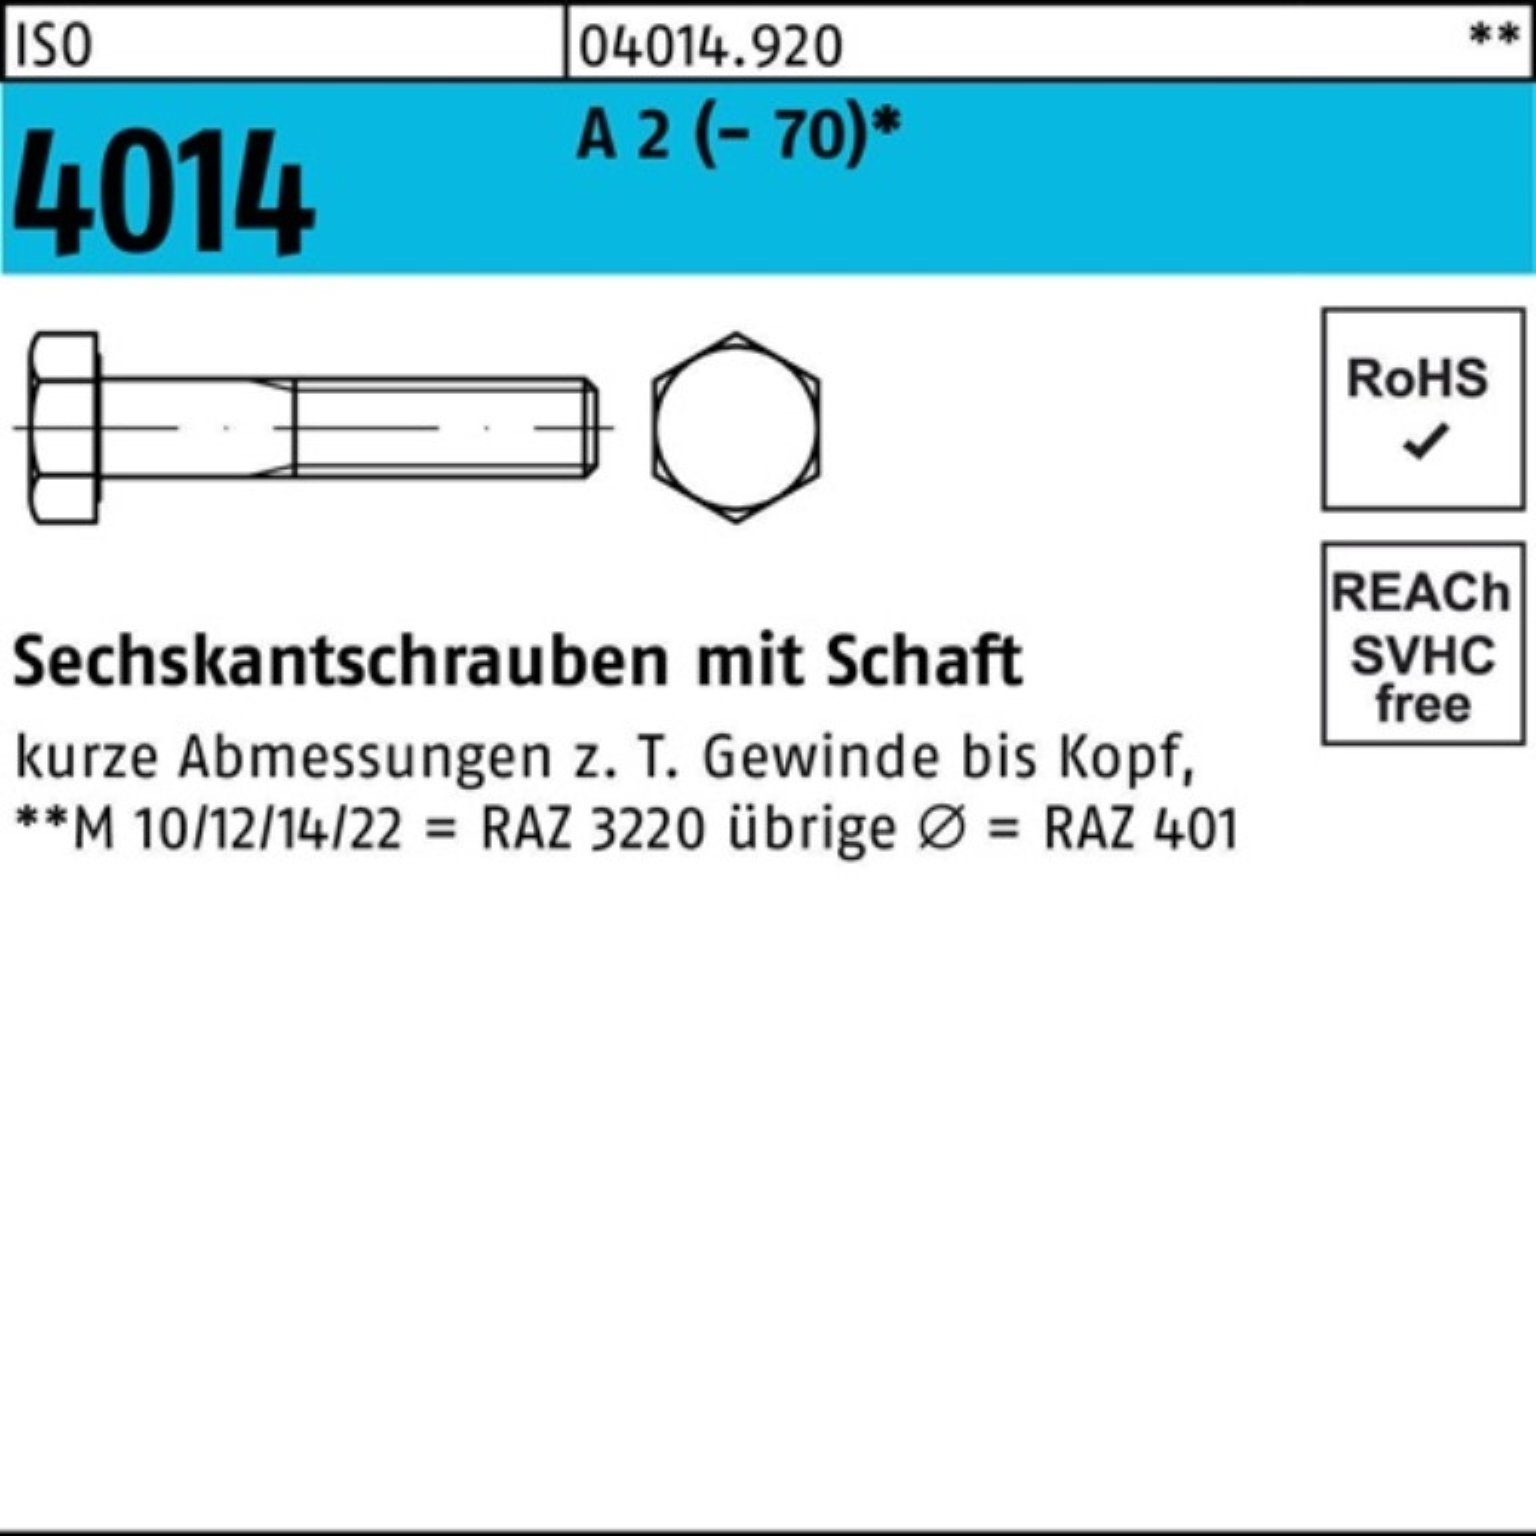 1 ISO Sechskantschraube Schaft (70) 240 4014 Bufab A Pack Sechskantschraube M12x 2 St 100er